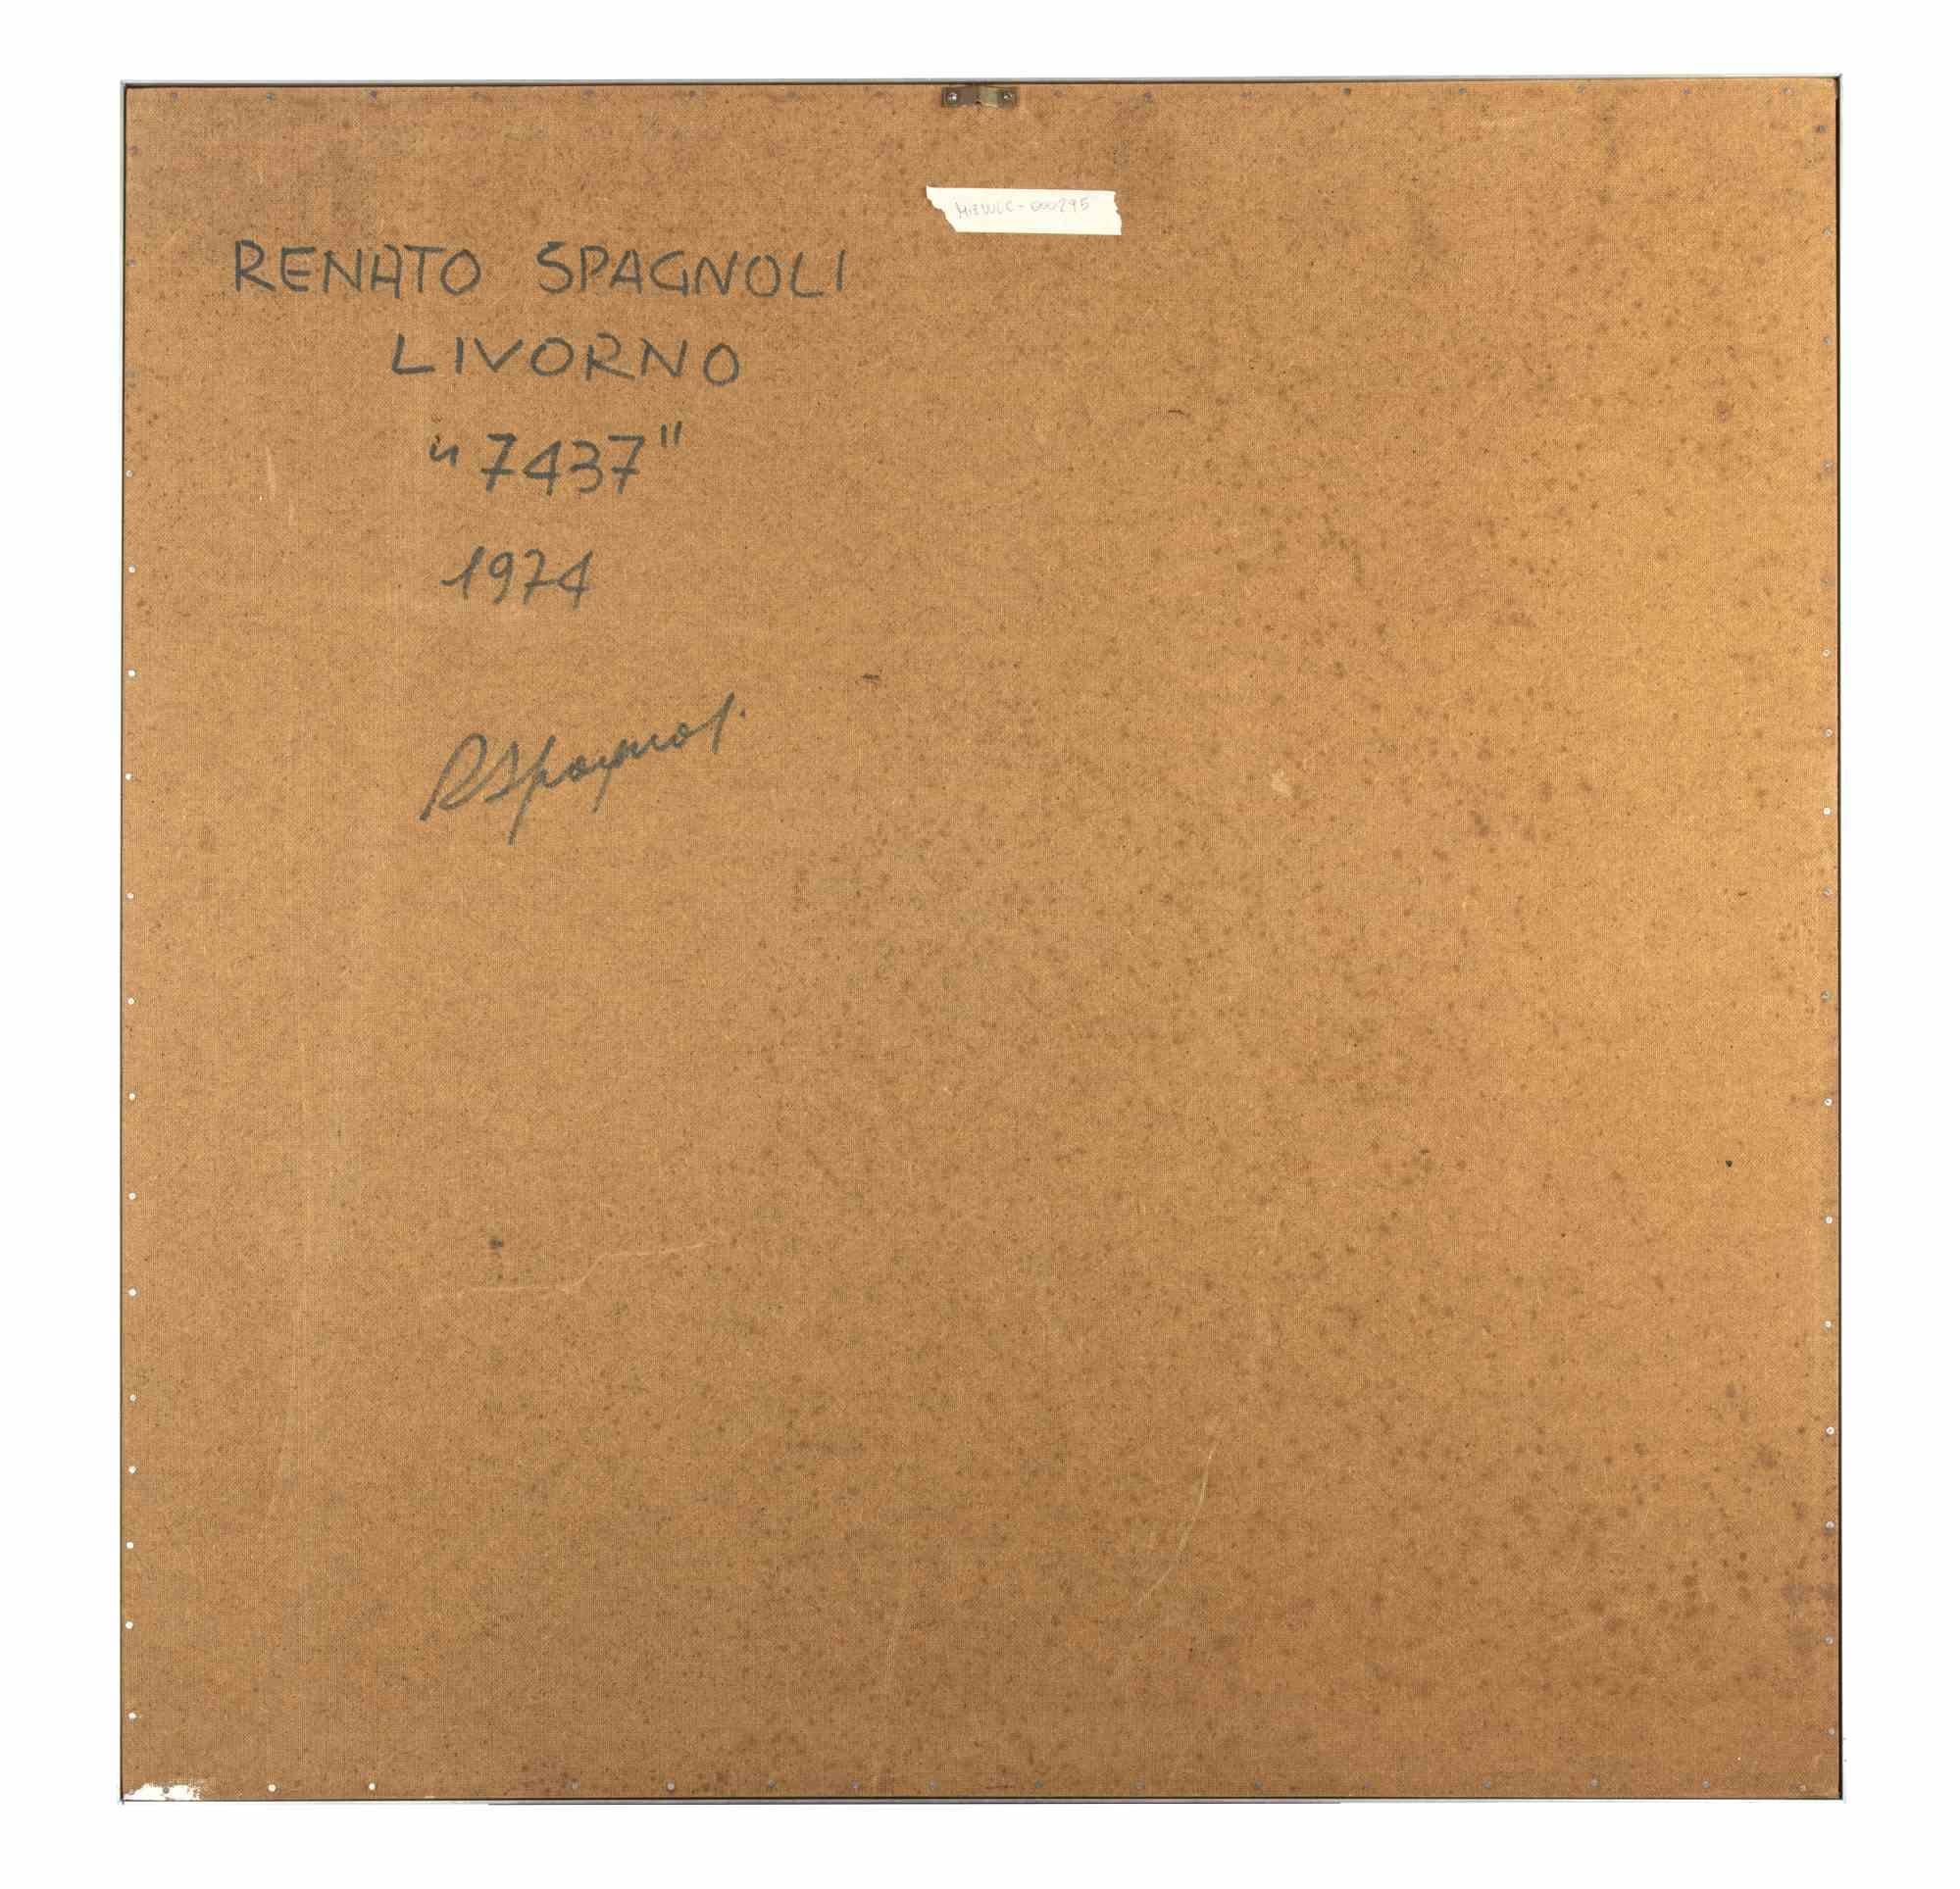 7437 - Mixed Media by Renato Spagnoli - 1974 For Sale 1